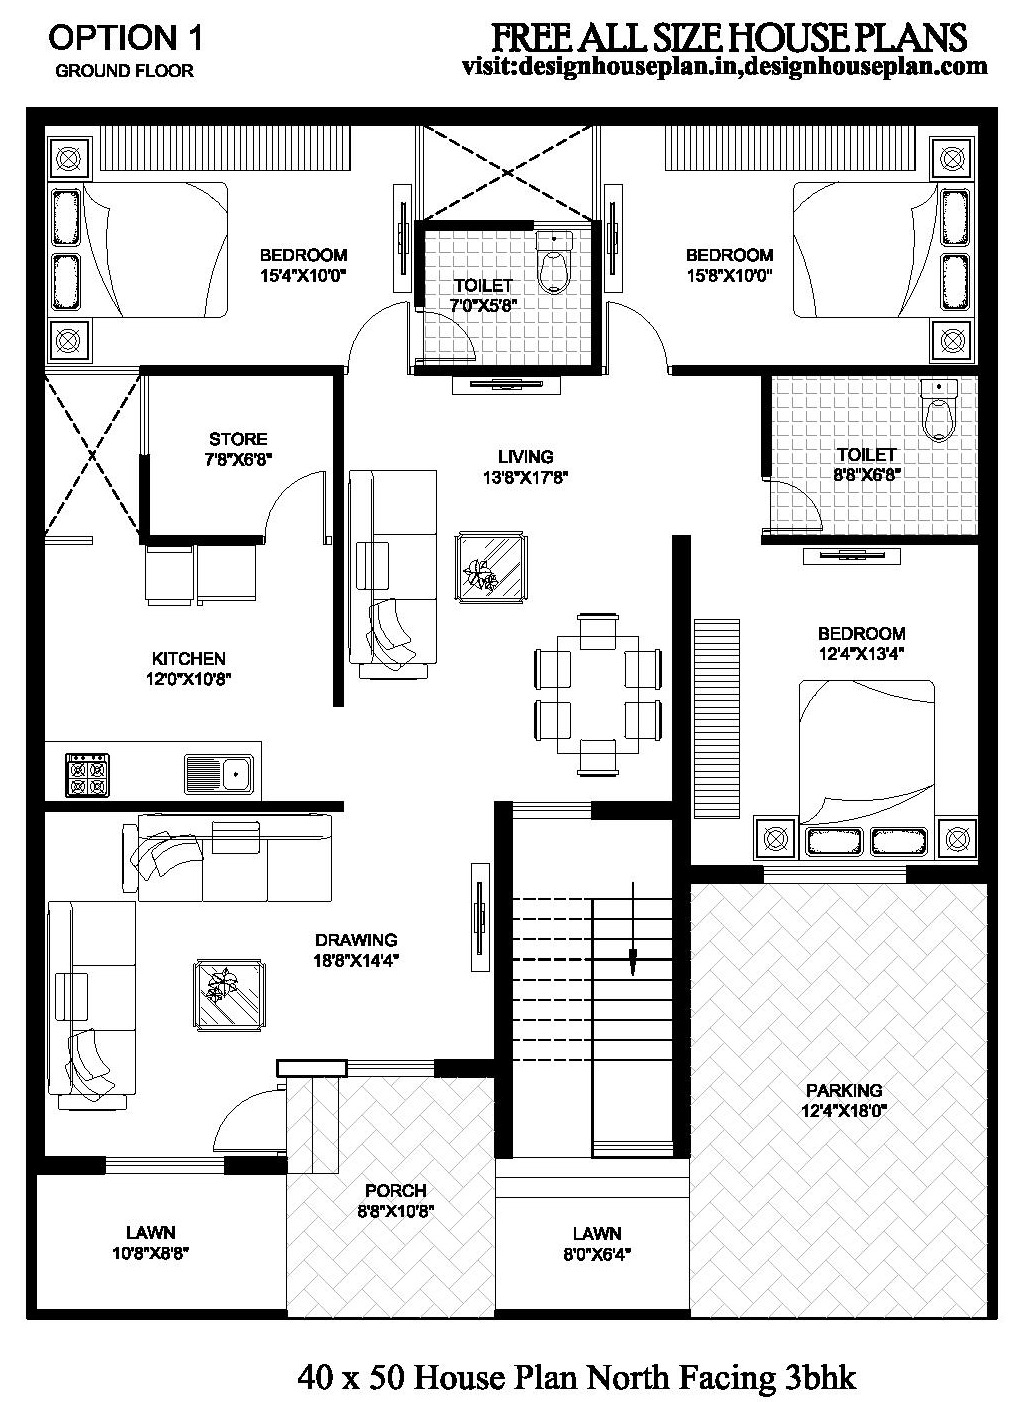 40x50 house plan